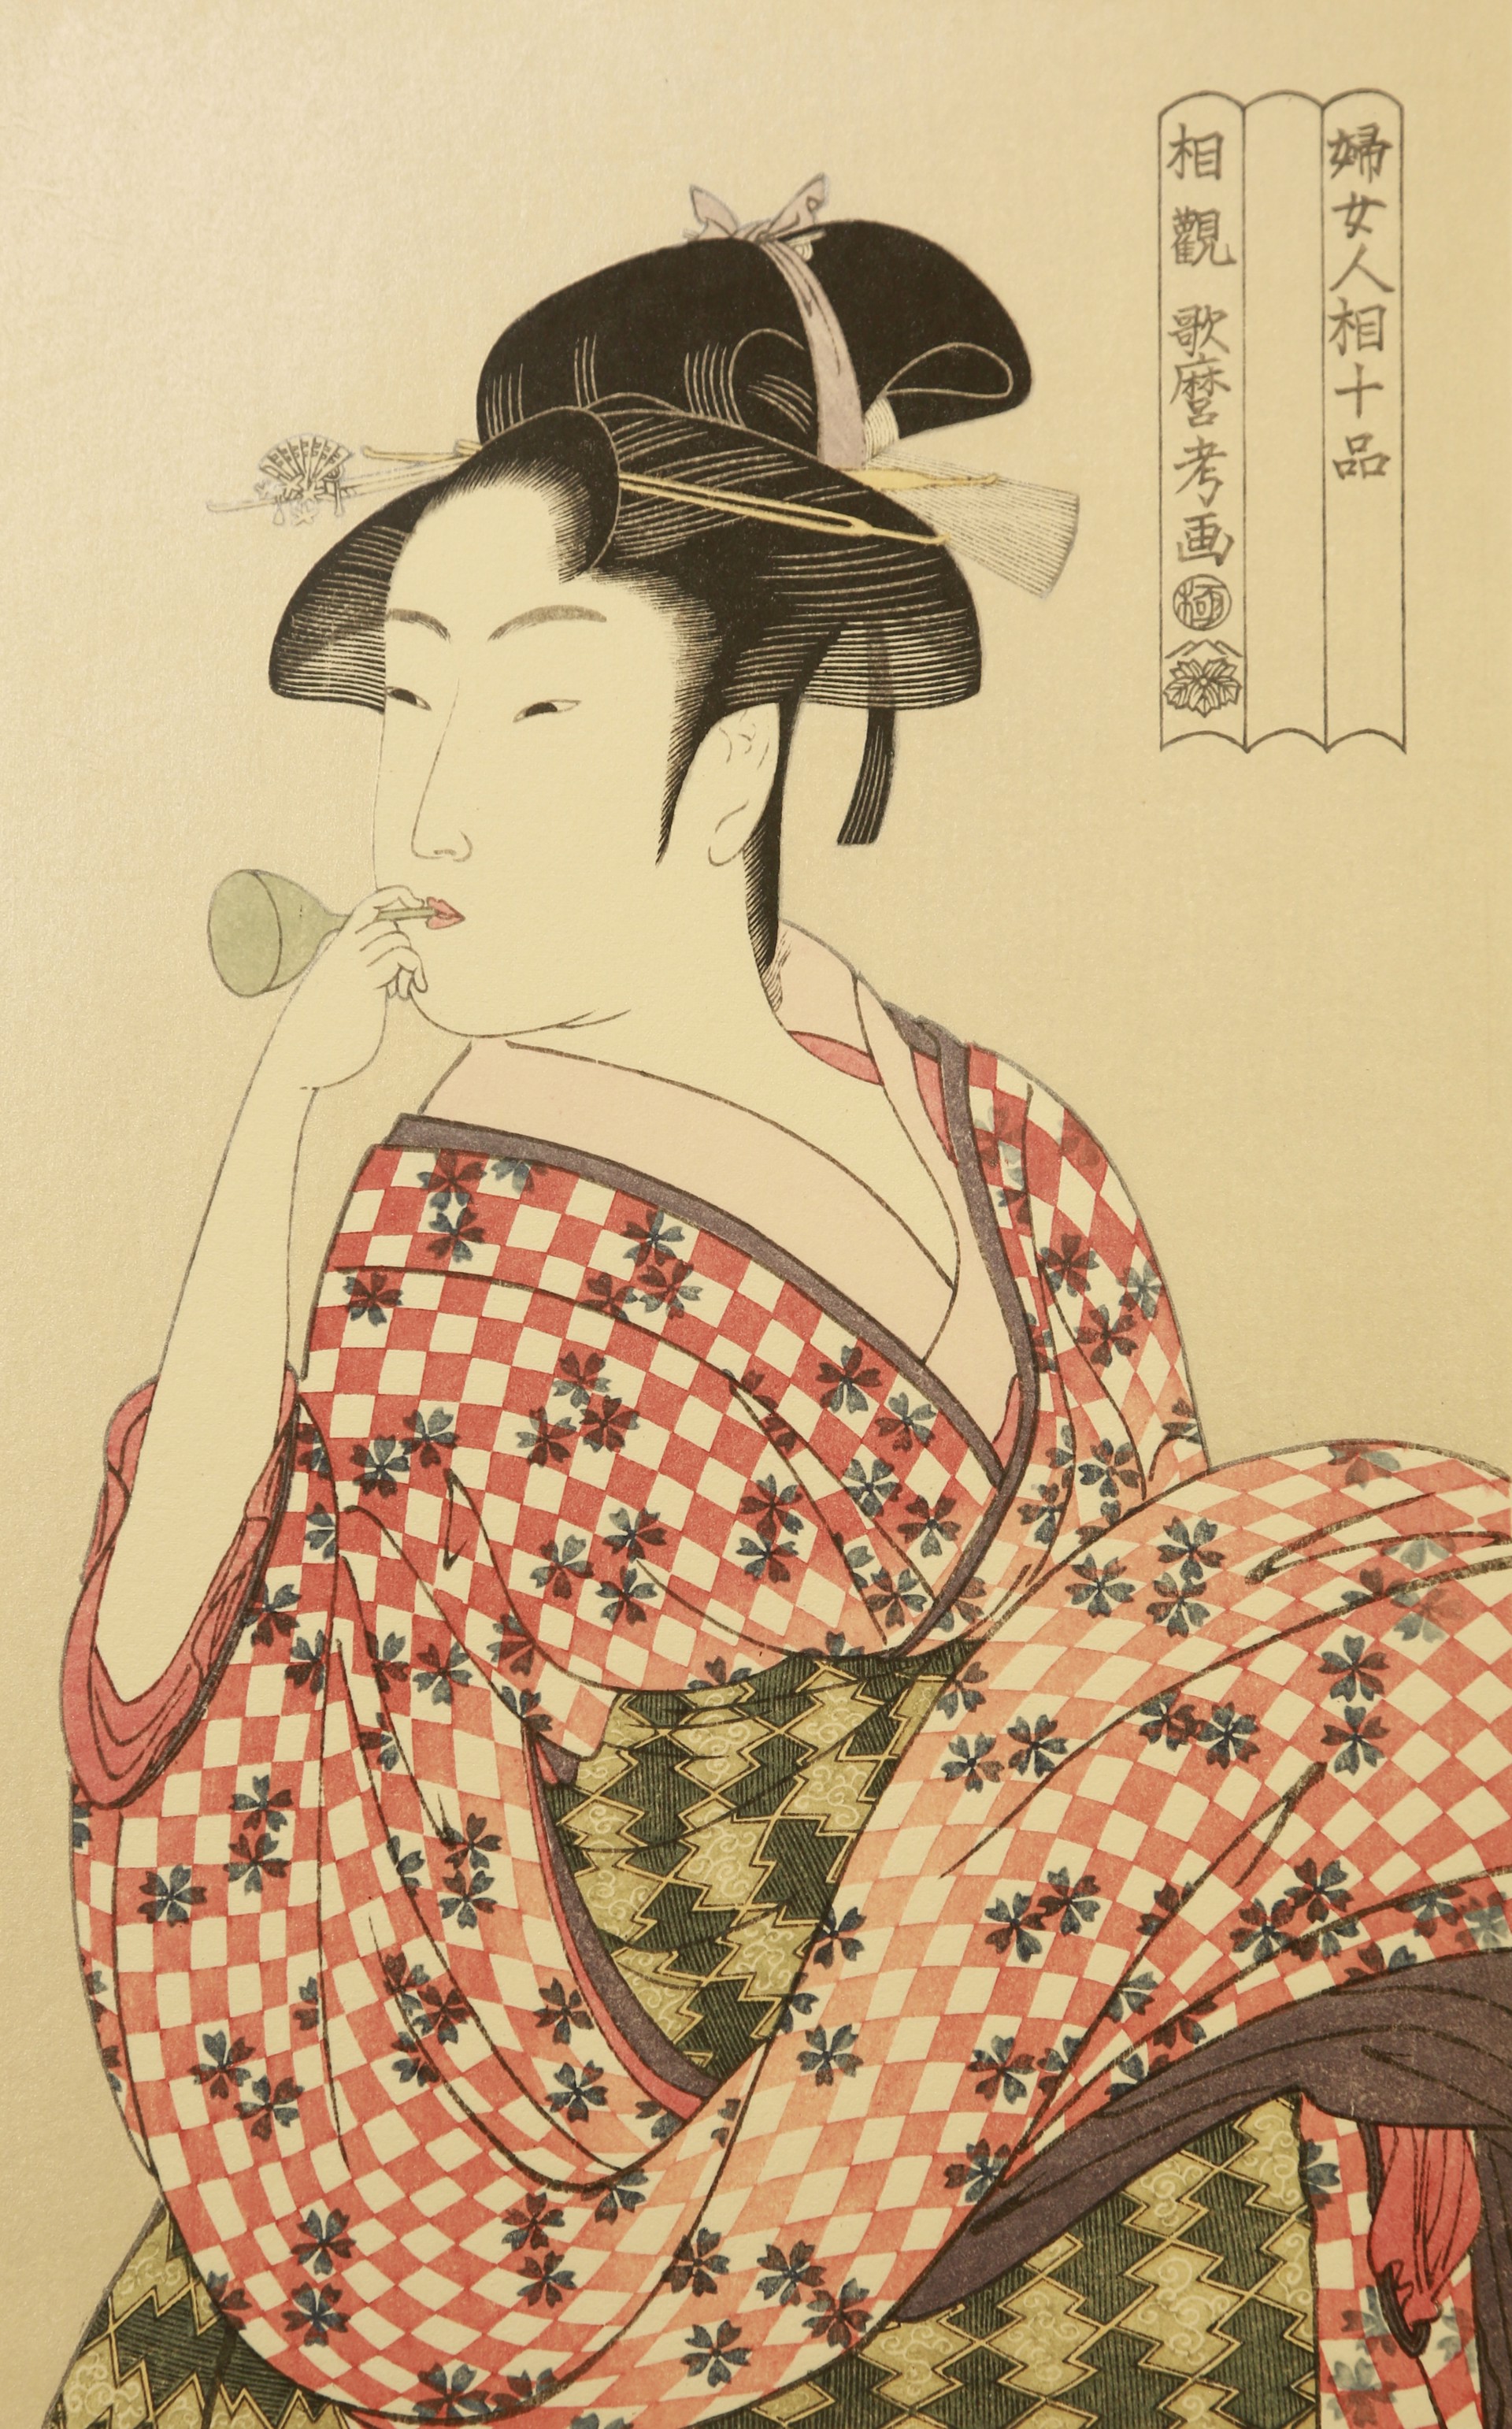 妇人相学十体 | 吹噗乒的少女 by 喜多川歌麿 Kitagawa Utamaro